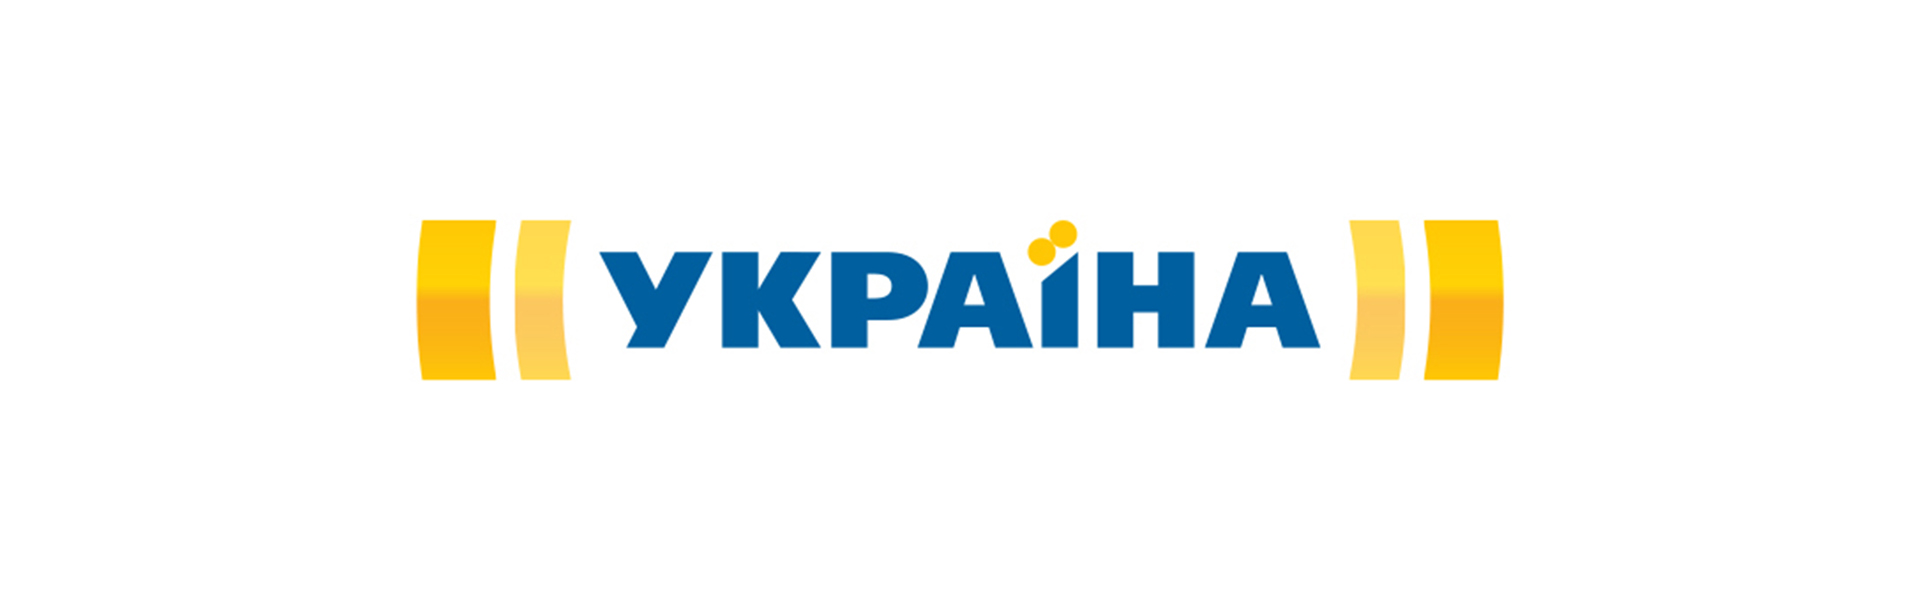 Держкіно анулювало прокатне посвідчення анонсованого каналом «Україна» серіалу